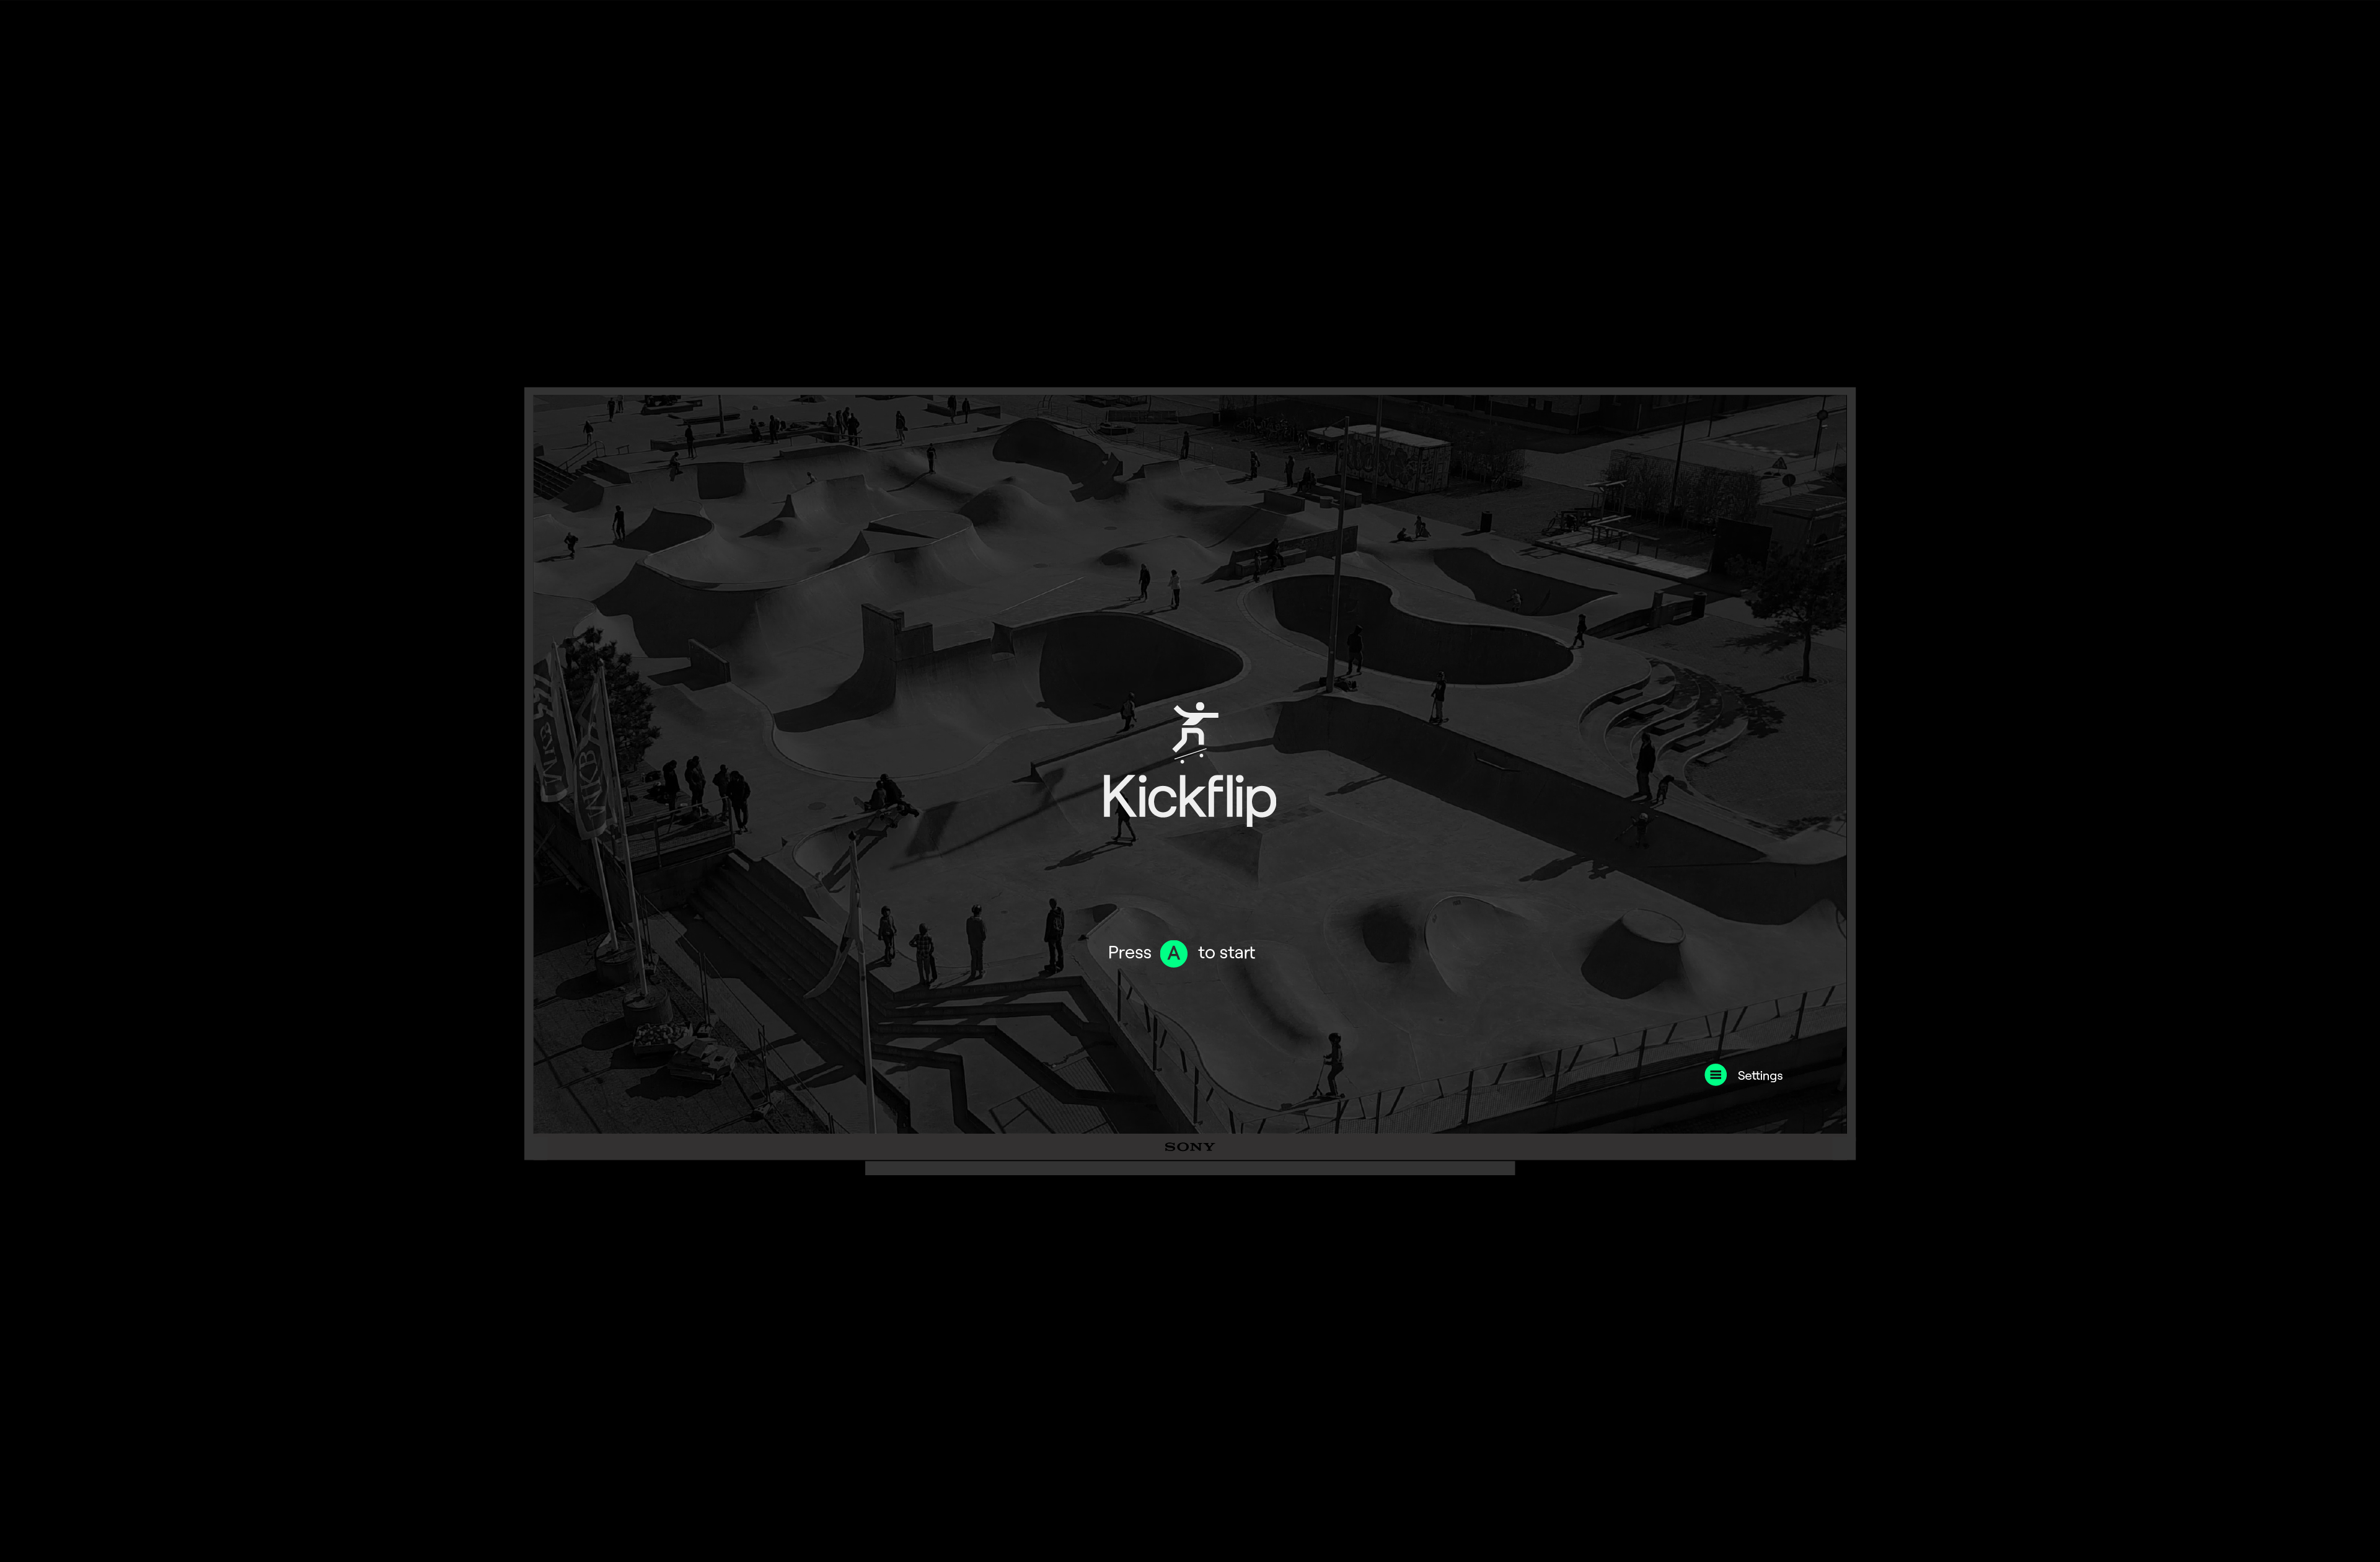 KF-title-screen-2x